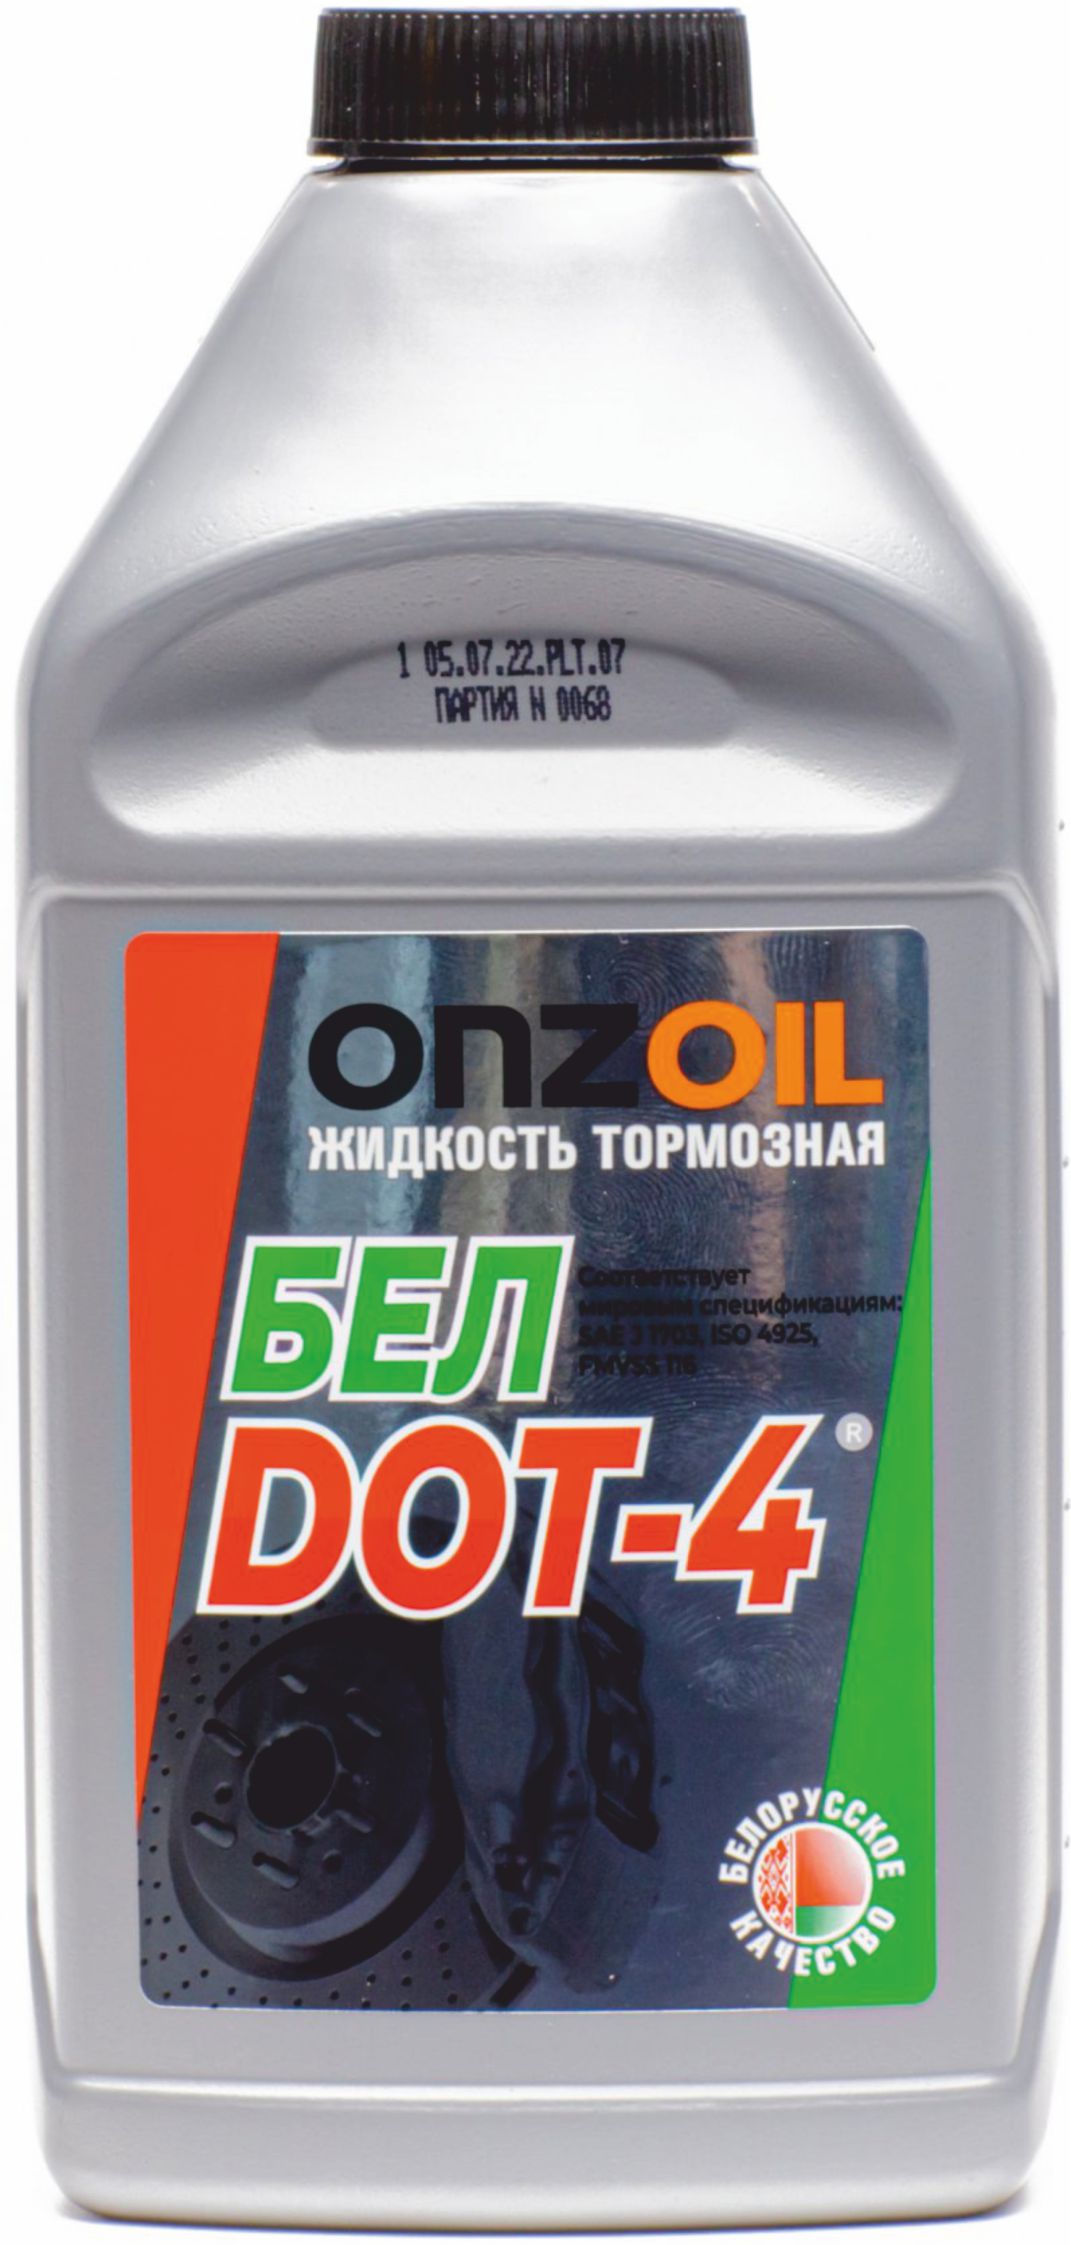 Жидкость тормозная Onzoil БЕЛDOT-4 455 г, 